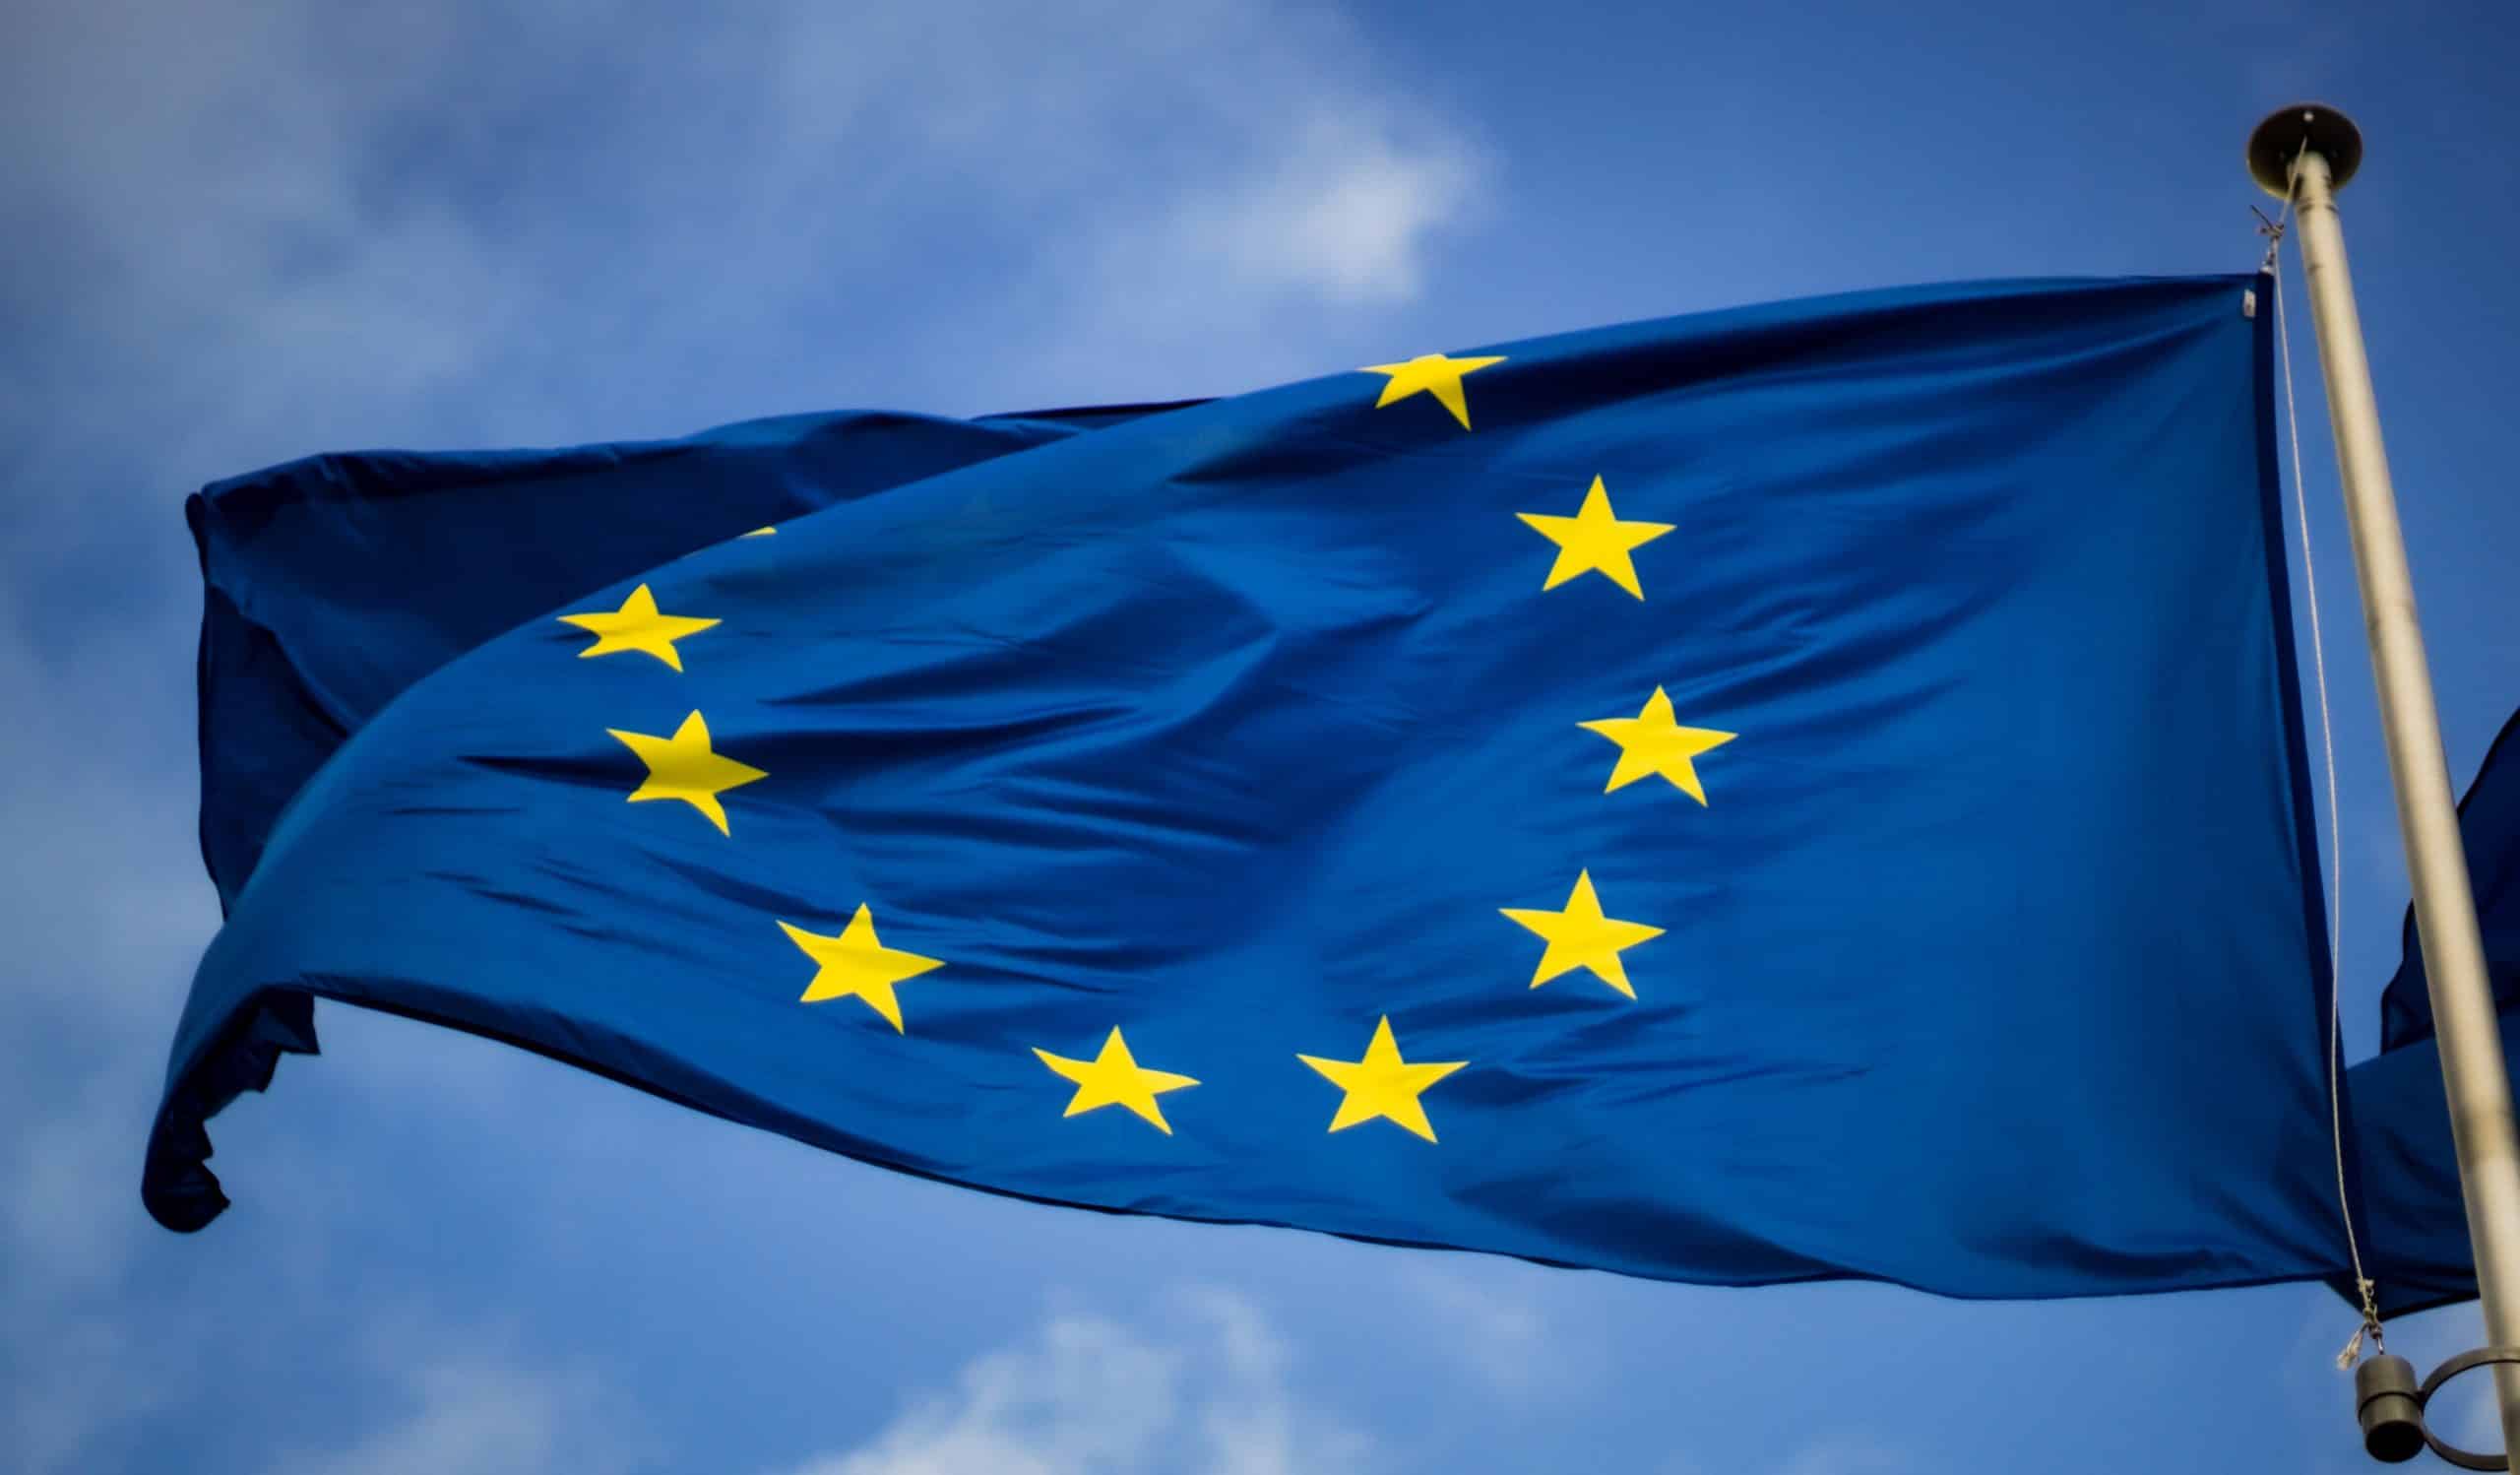 Le drapeau européen qui flotte dans les airs.